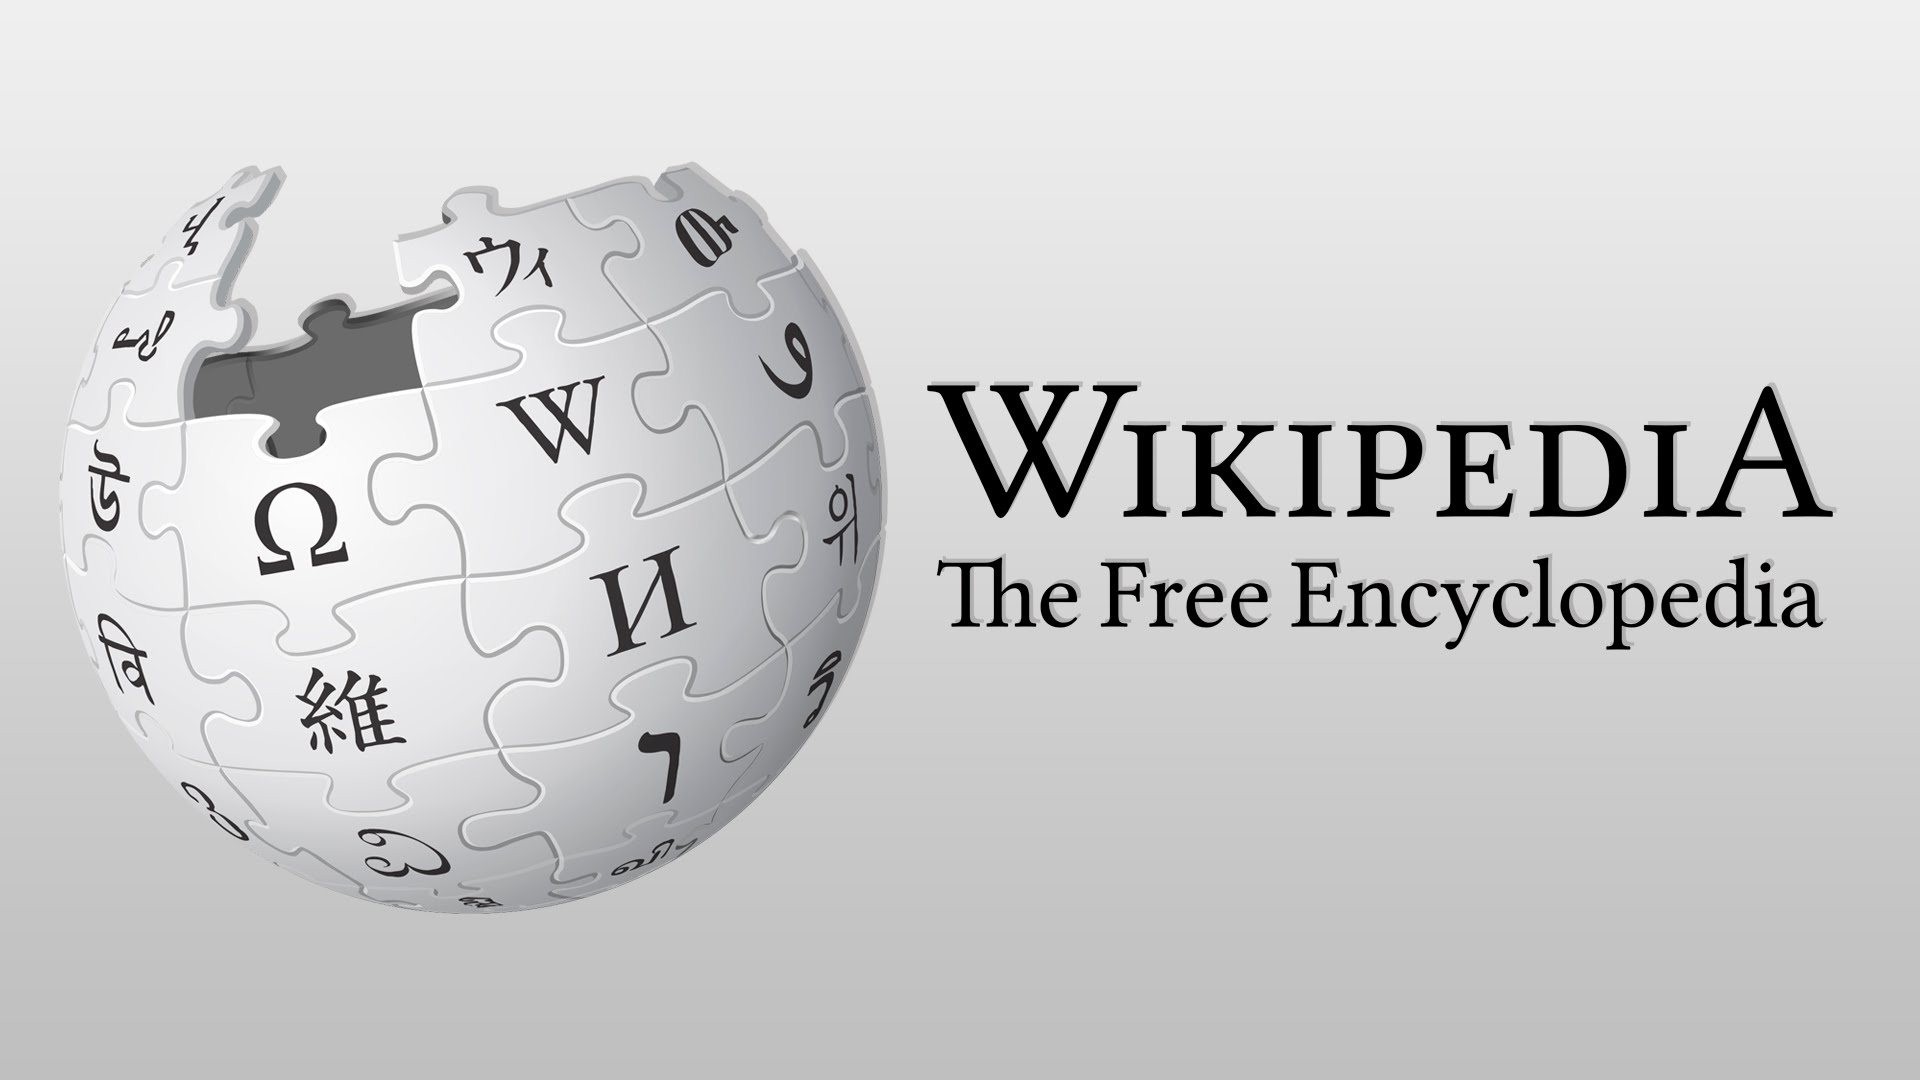 Hükümet, wikipedia ya izin vermeyecek